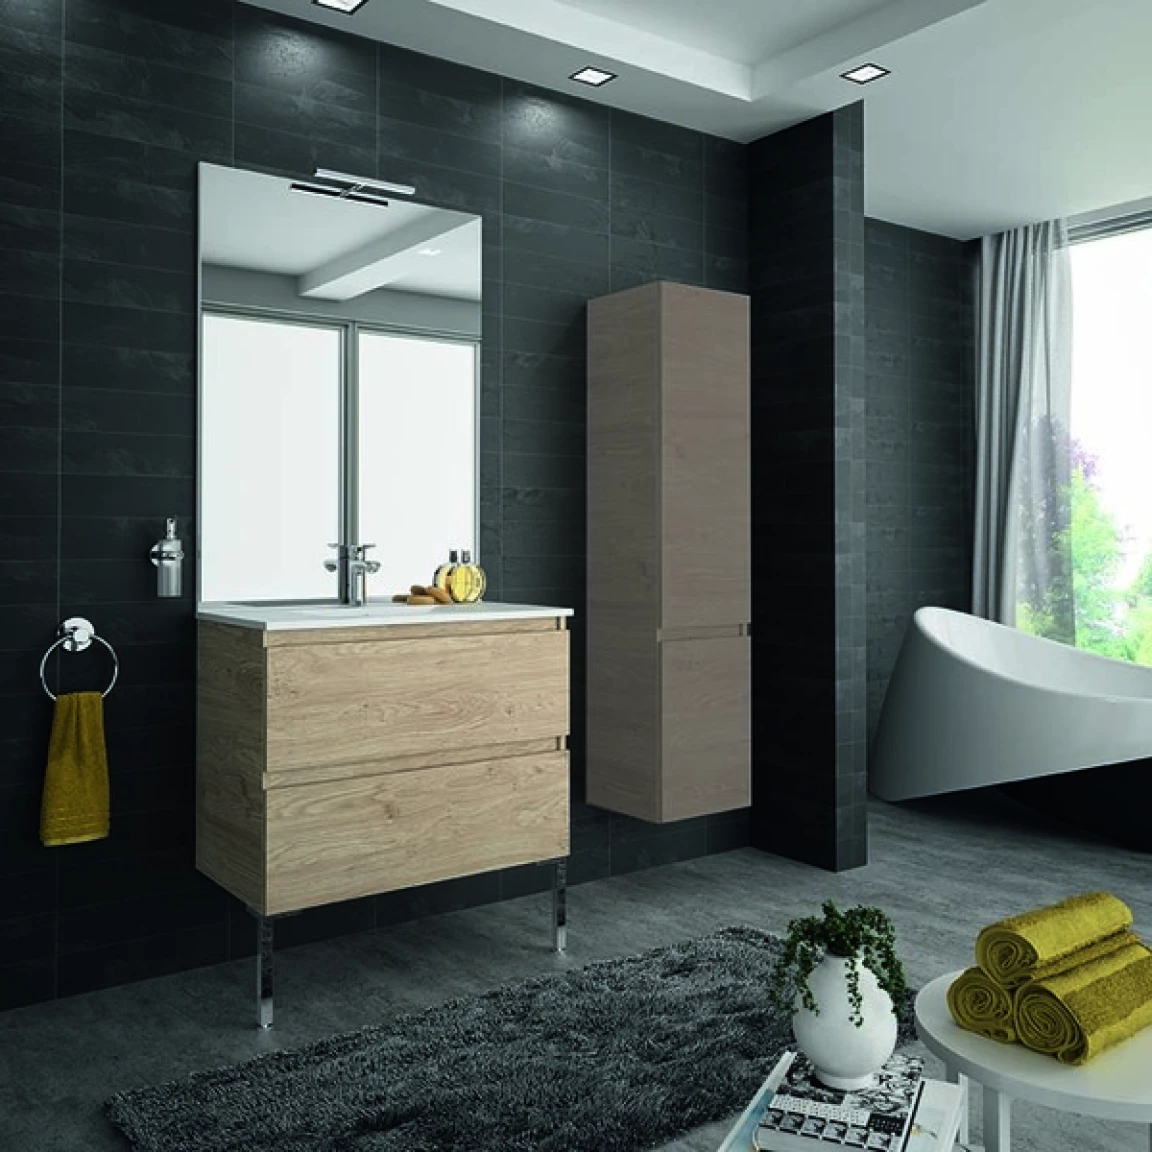 Ensemble meuble de salle de bain CAMPUS 90 cm, plan vasque GELCOAT, prof. cuve 115 mm, miroir sur plan, gris filaire, 2 tiroirs